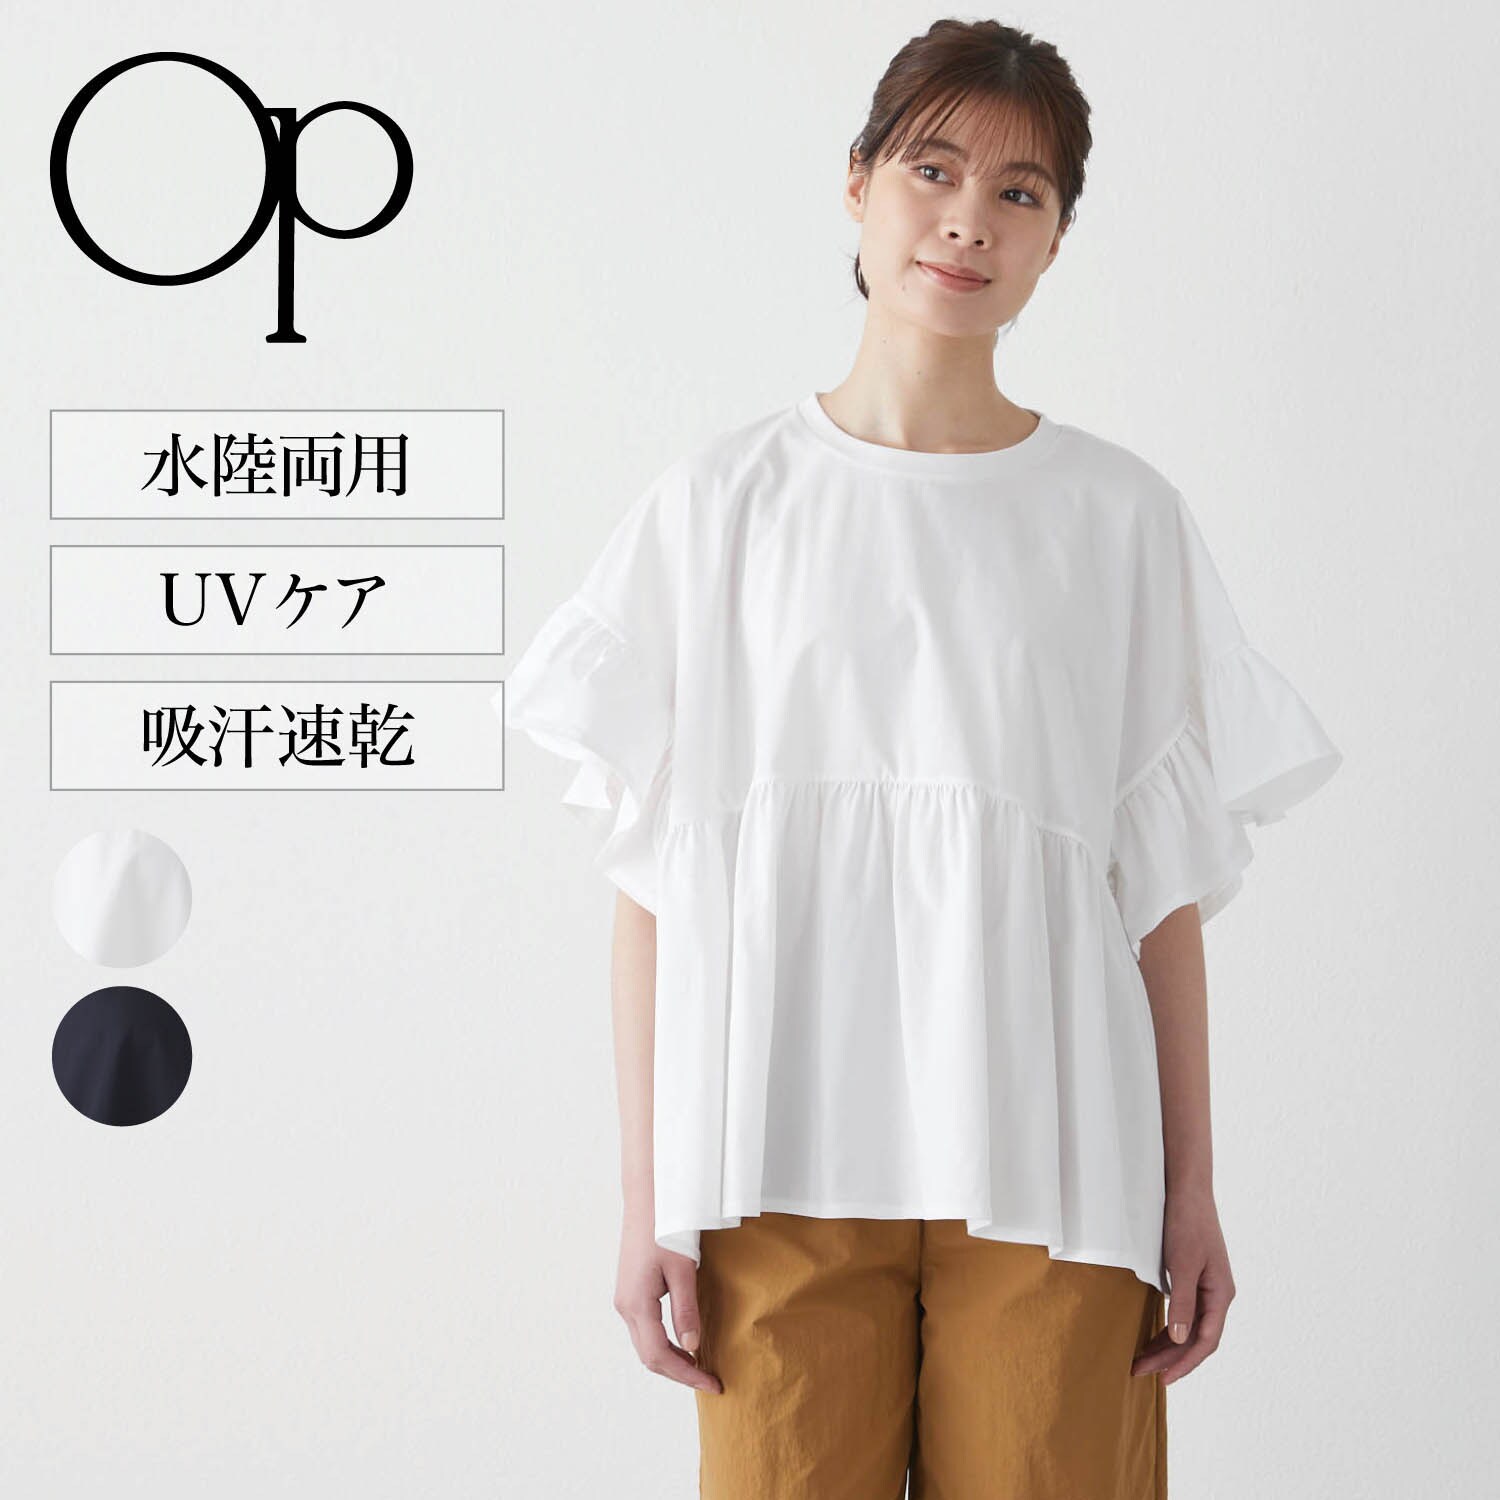 【オーシャンパシフィック/OCEAN PACIFIC】水陸両用フレア半袖Tシャツ